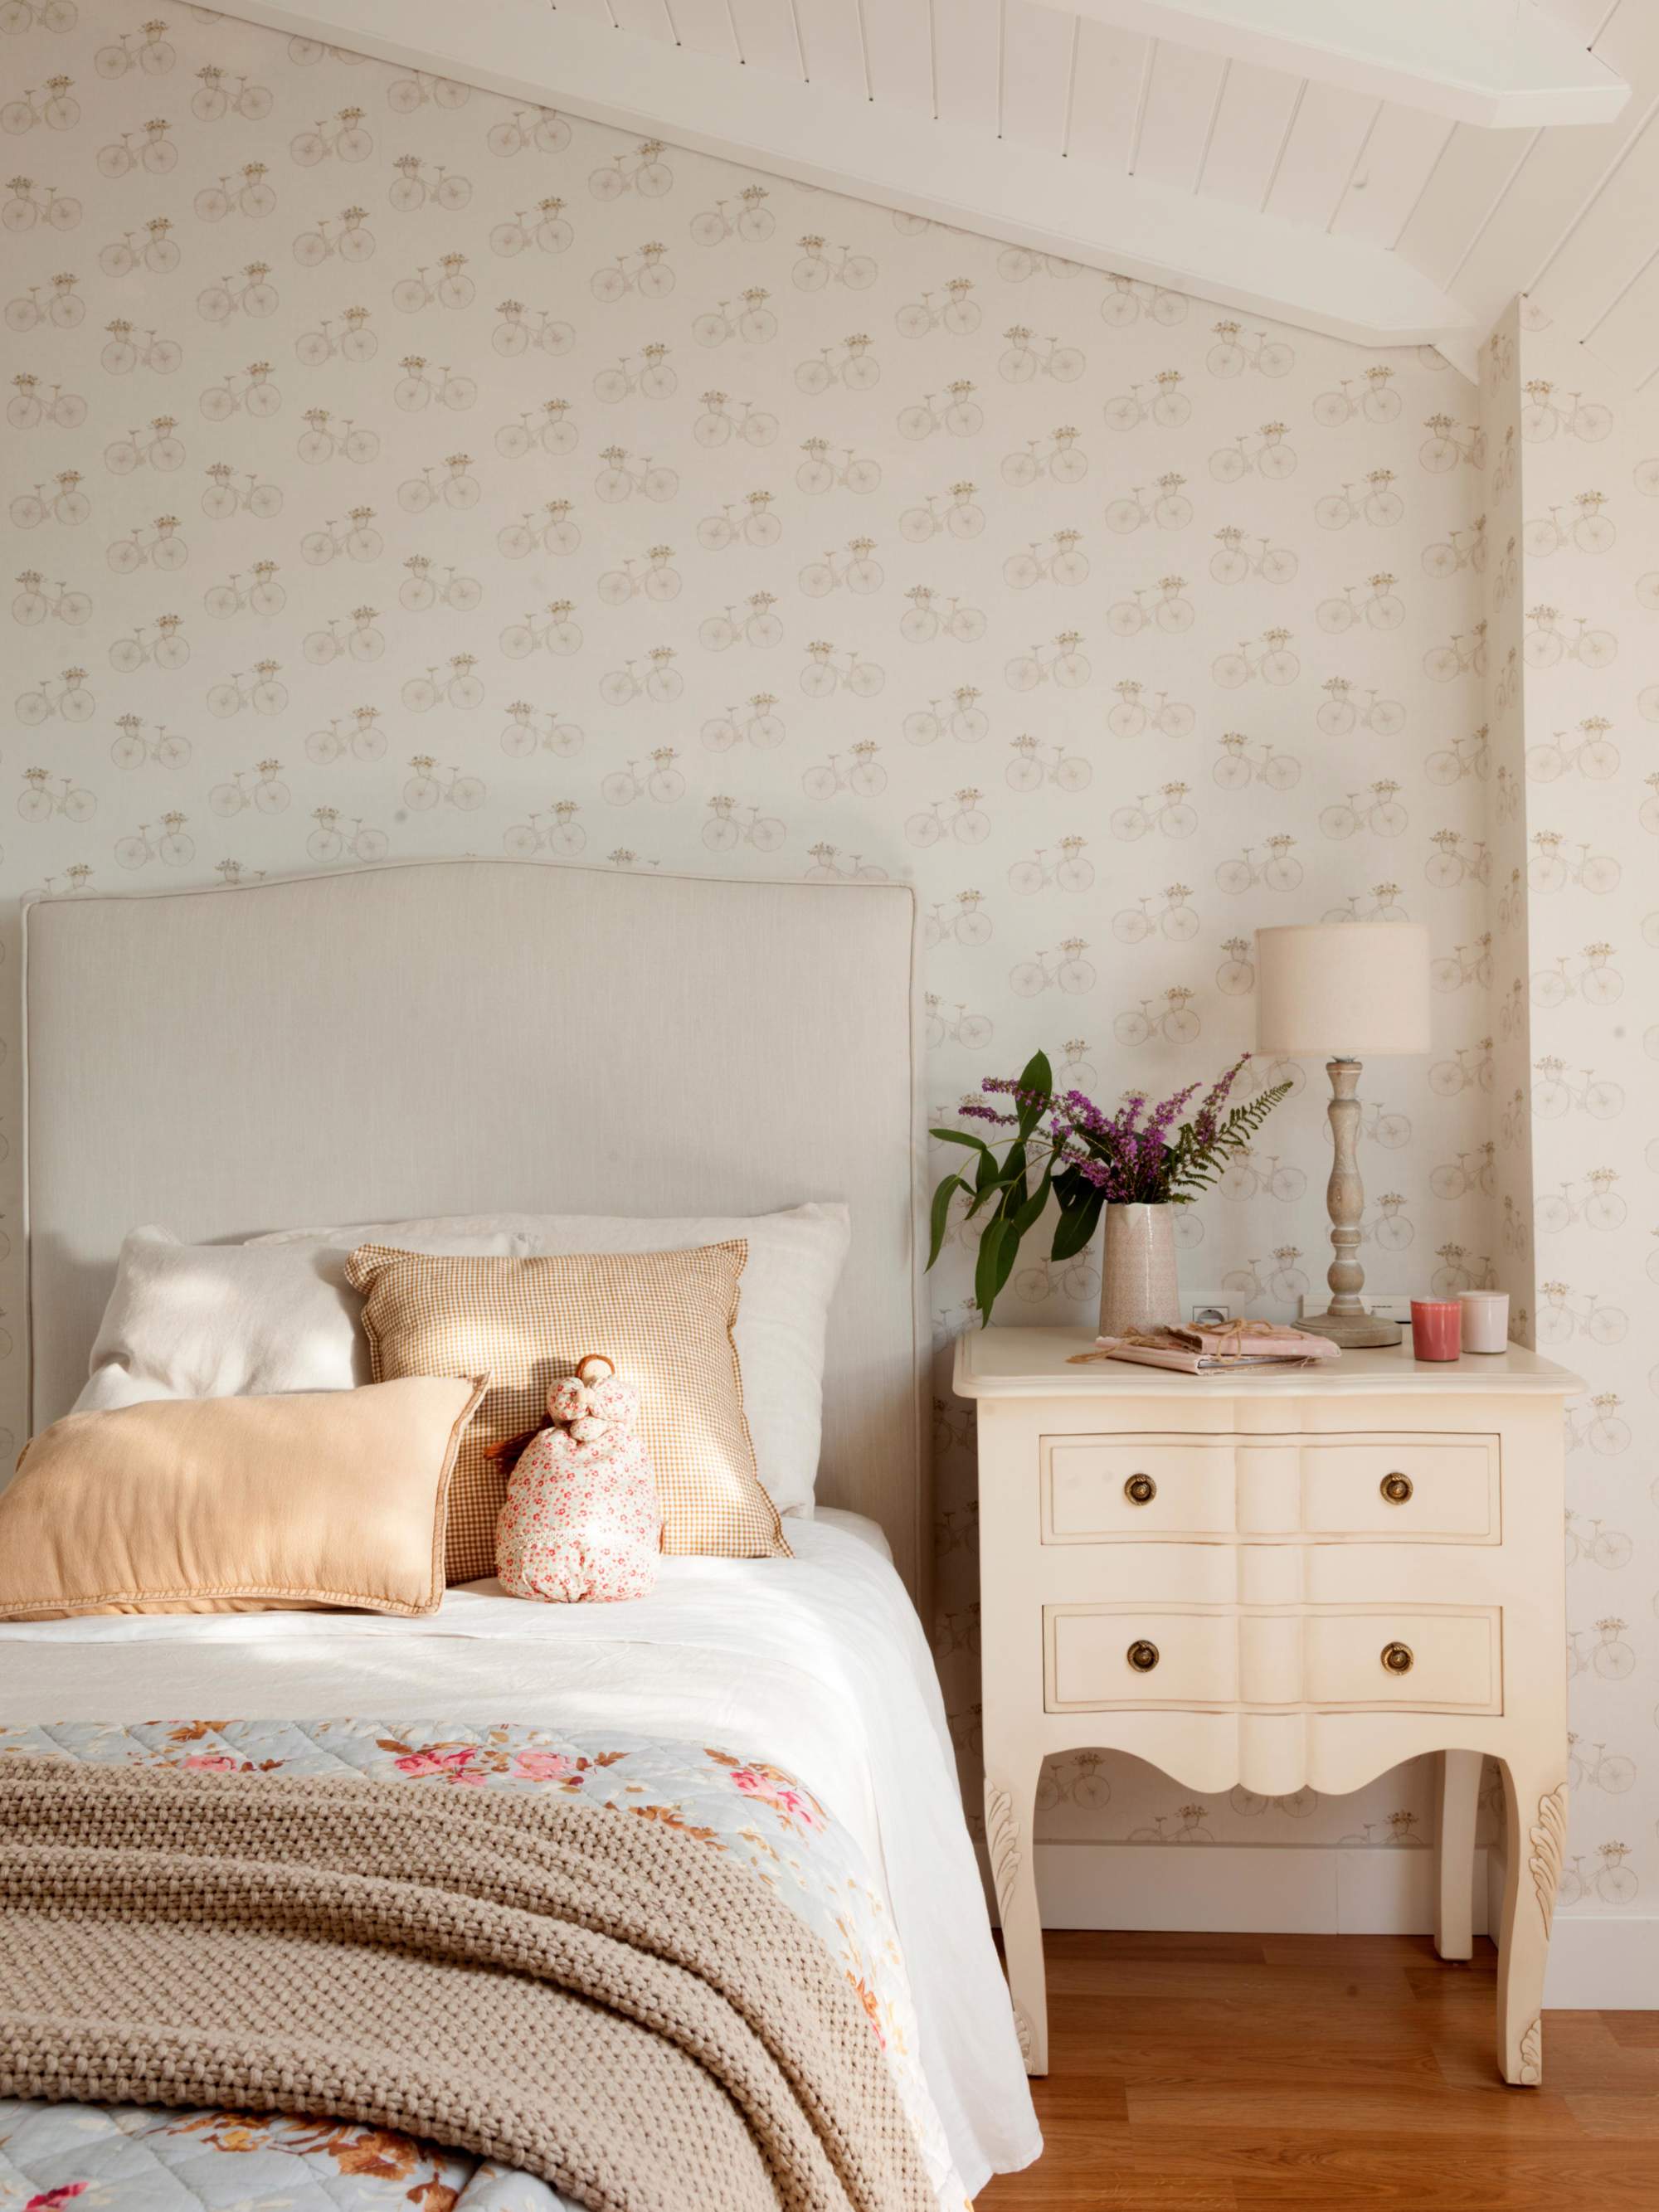 Dormitorio abuhardillado con papel pintado en cabecero y mesita de noche blanco con cajones